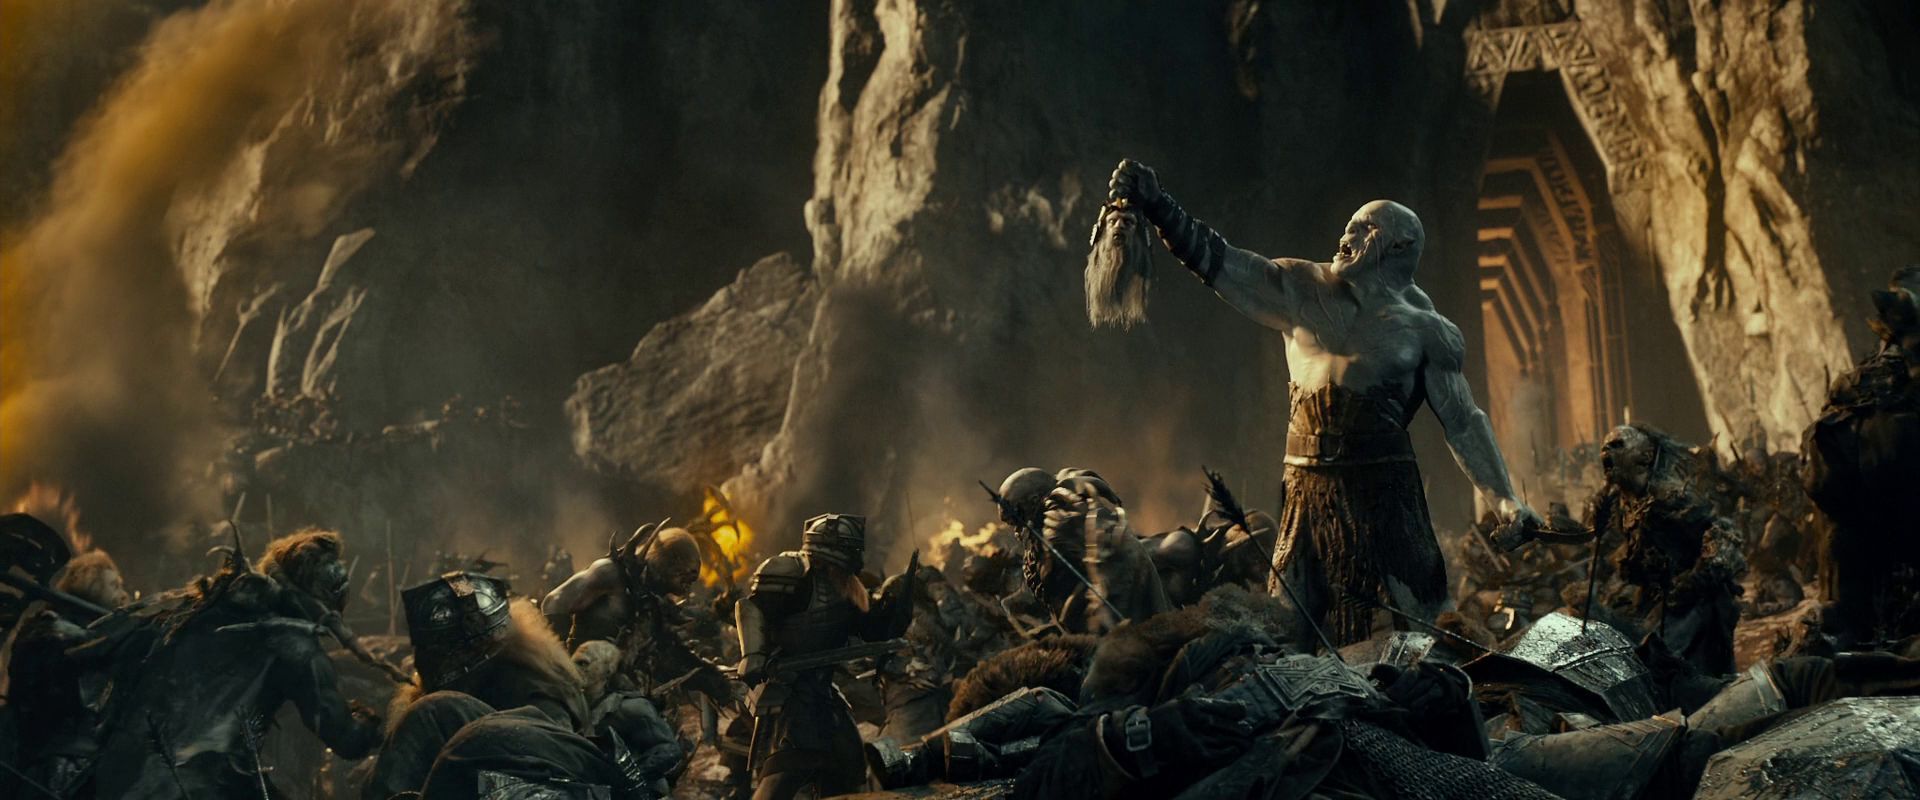 ¿Cómo se llama el lugar dónde se libra la batalla en la que muere el rey de Erebor y Thorin recibe el mote de escudo de roble?